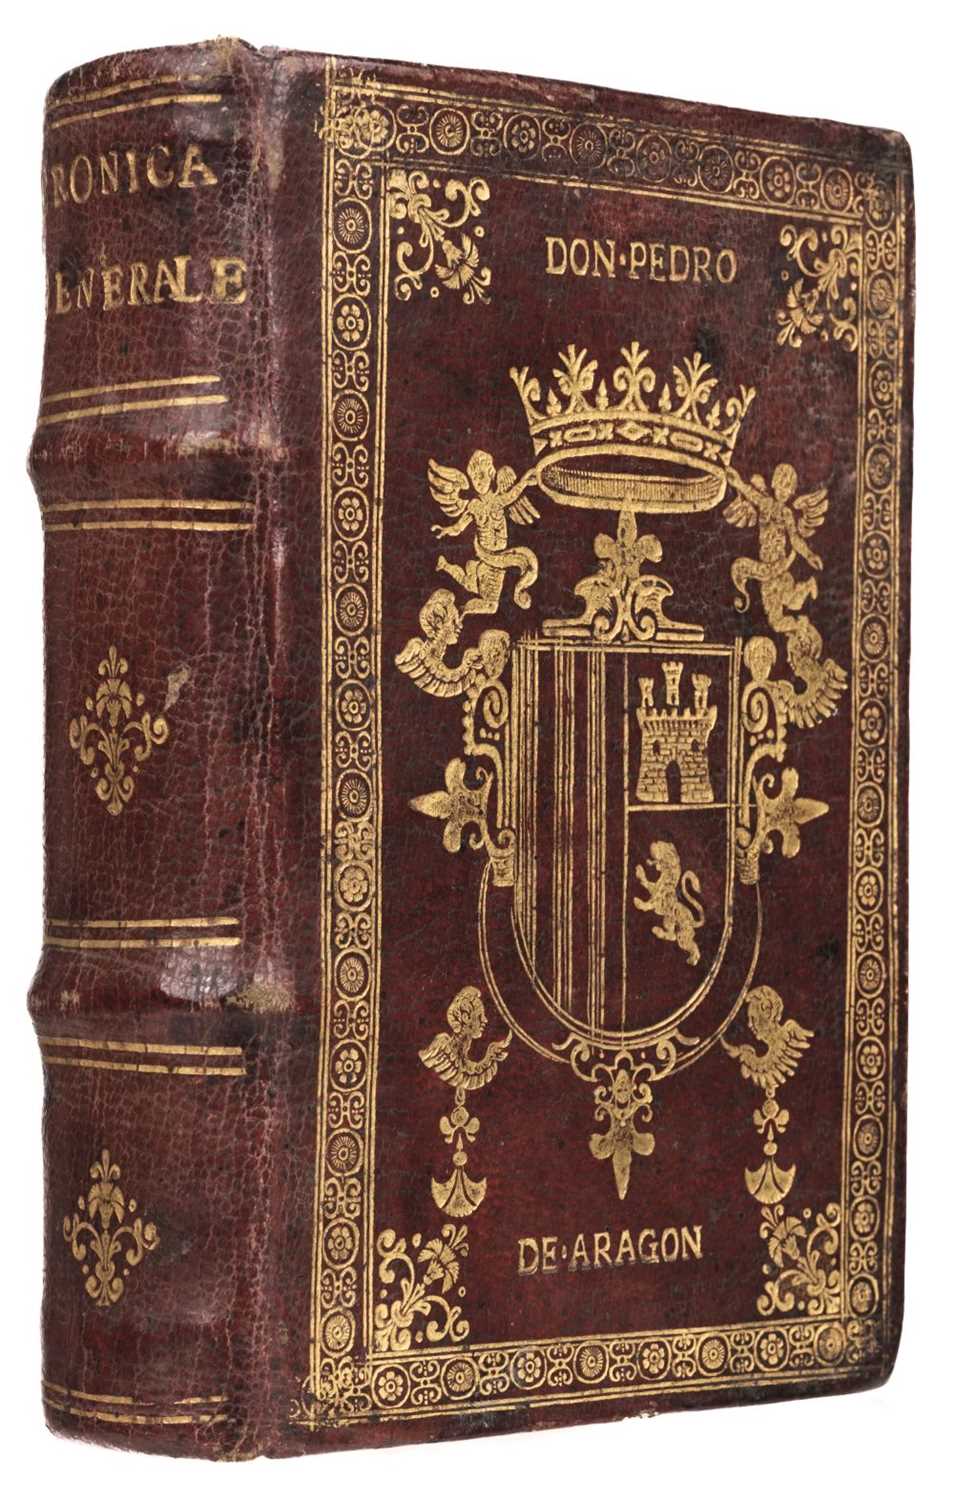 199 - Beuter (Pedro Antonio). Cronica generale d'Hispagna, et del Regno di Valenza, 1556